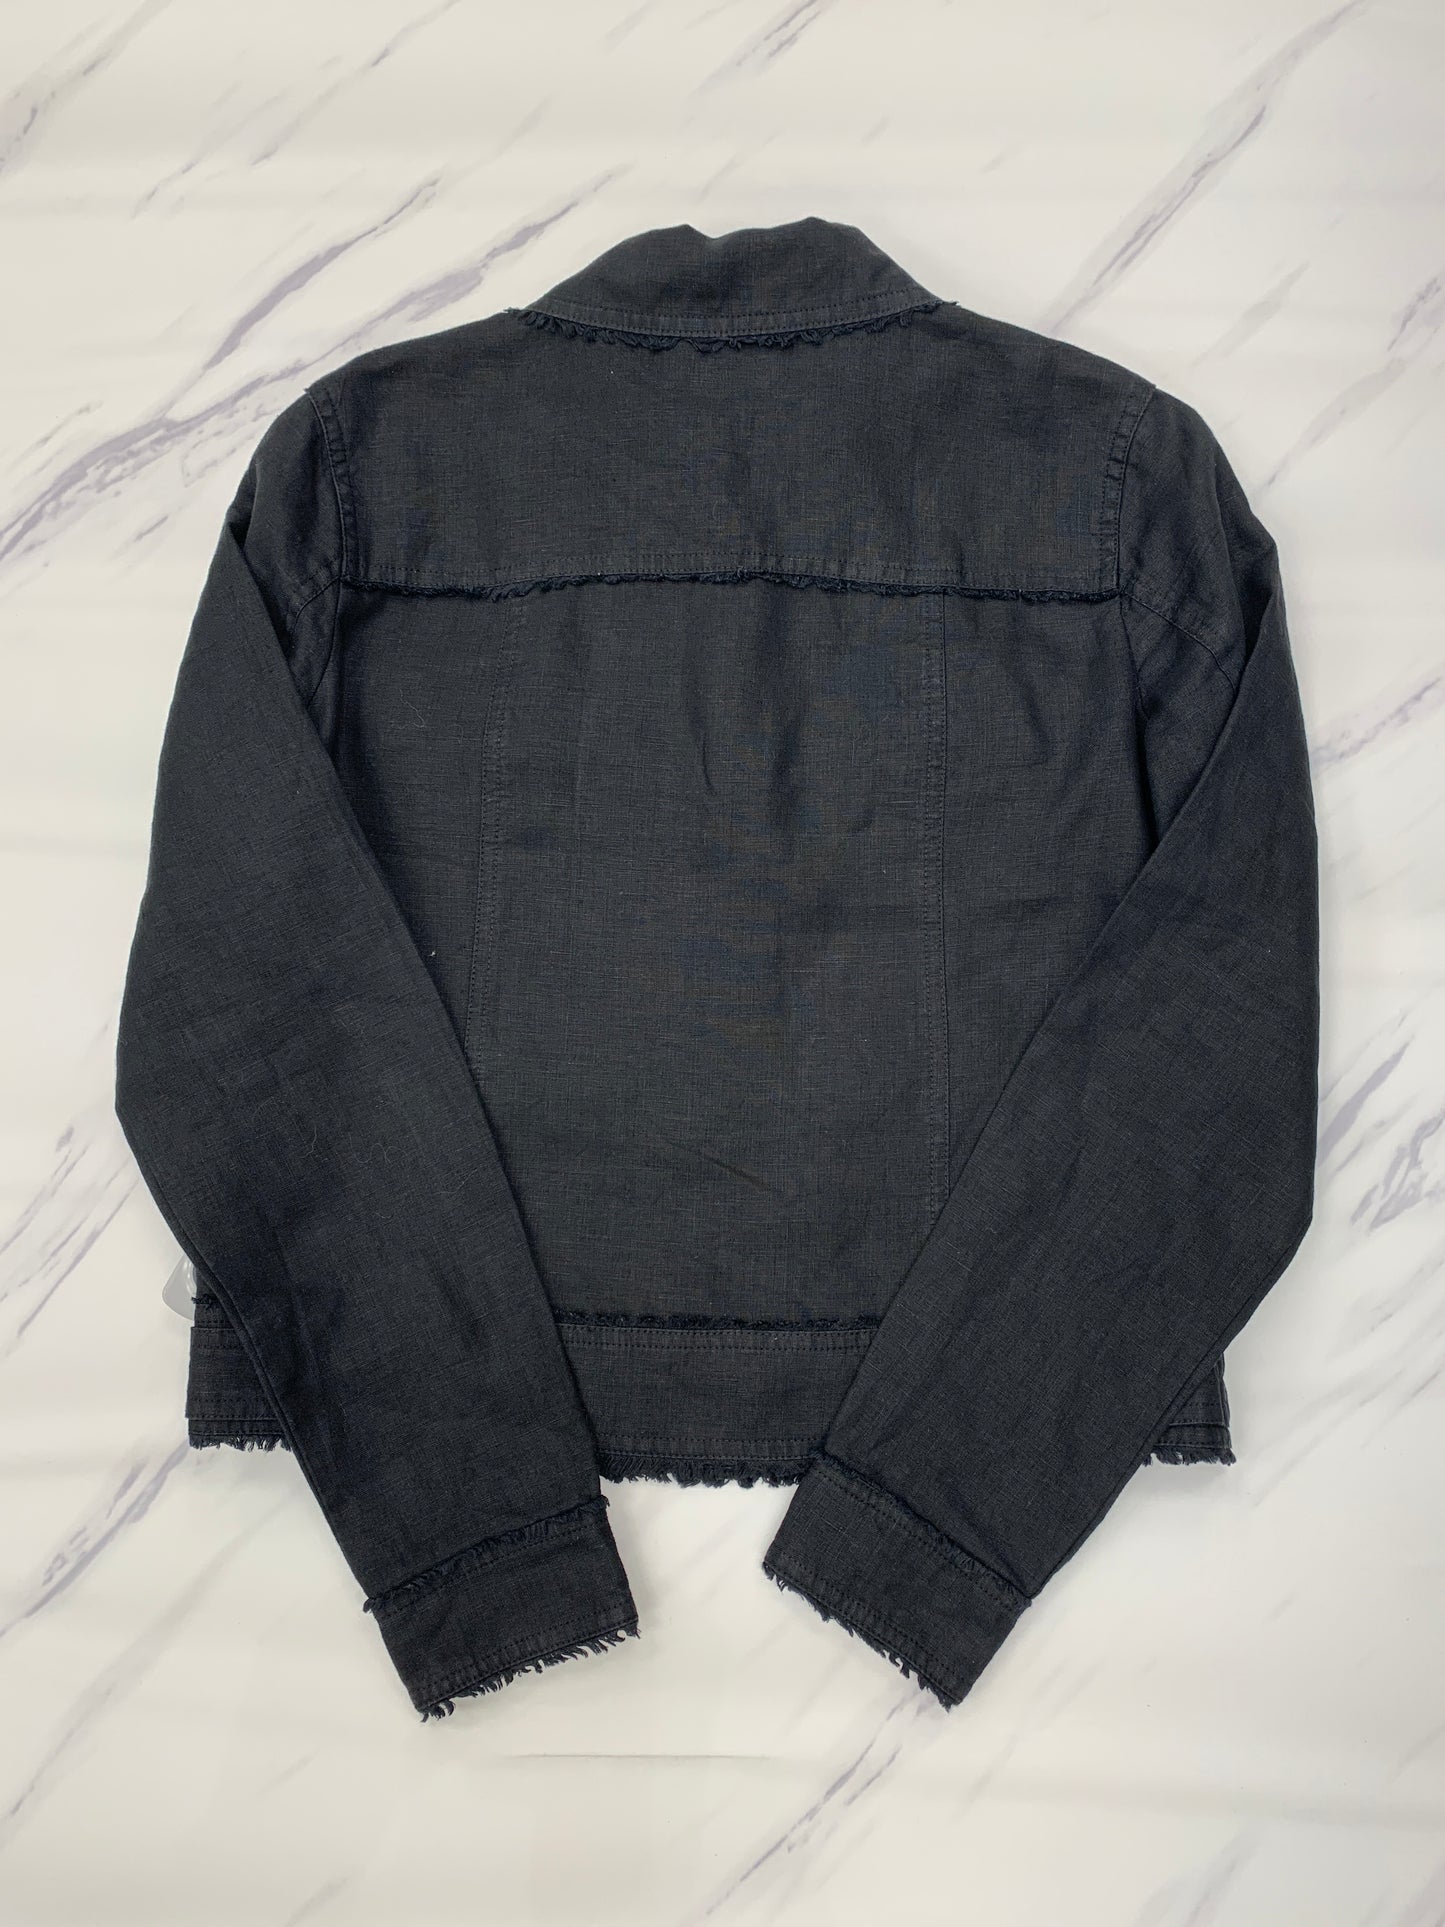 Jacket Designer By Tommy Bahama  Size: Xs